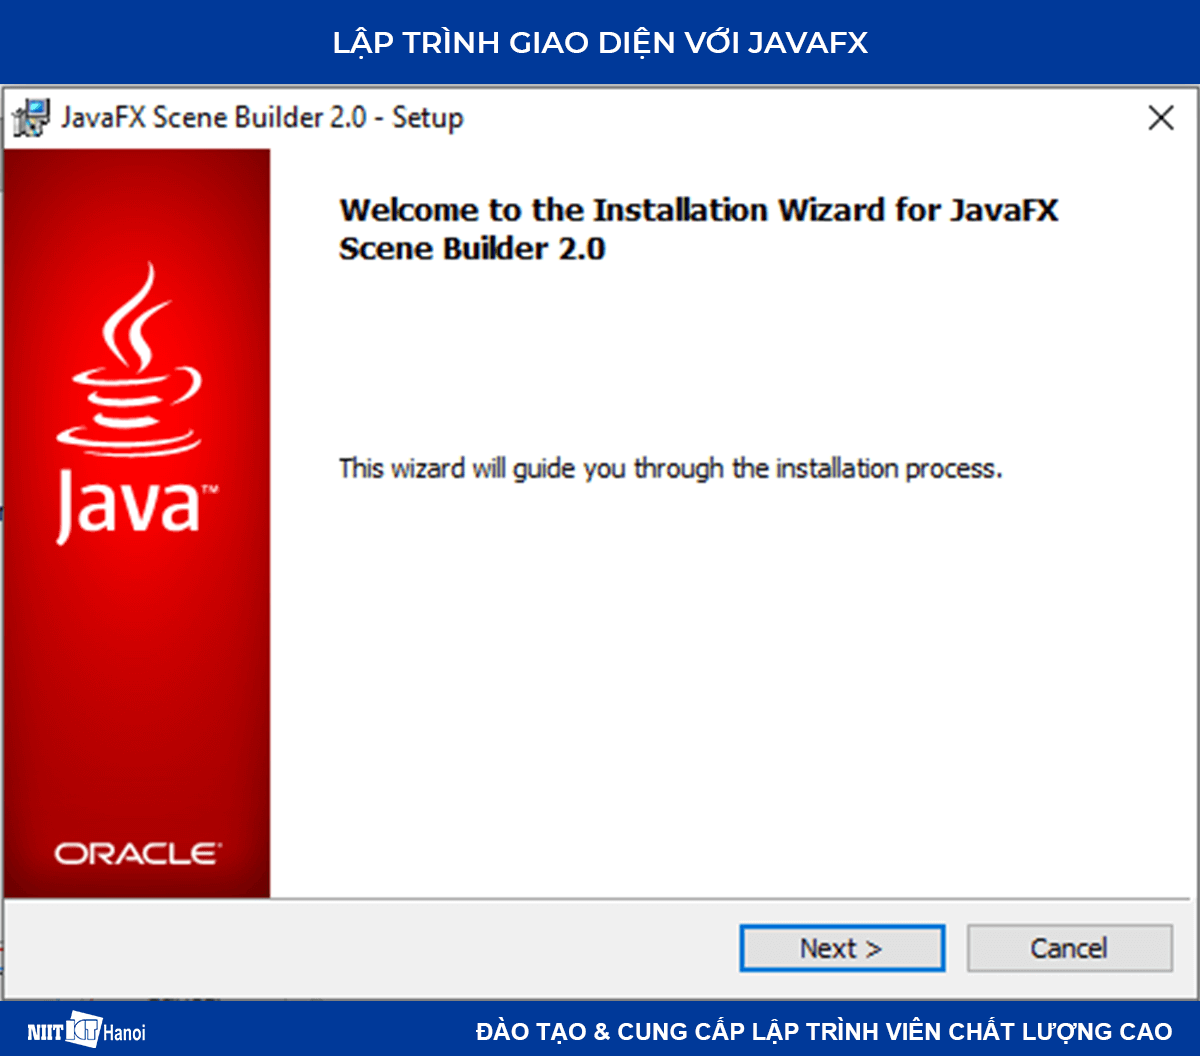 Lập trình giao diện với JavaFX: Cài đặt JavaFX Scence Builder - 1